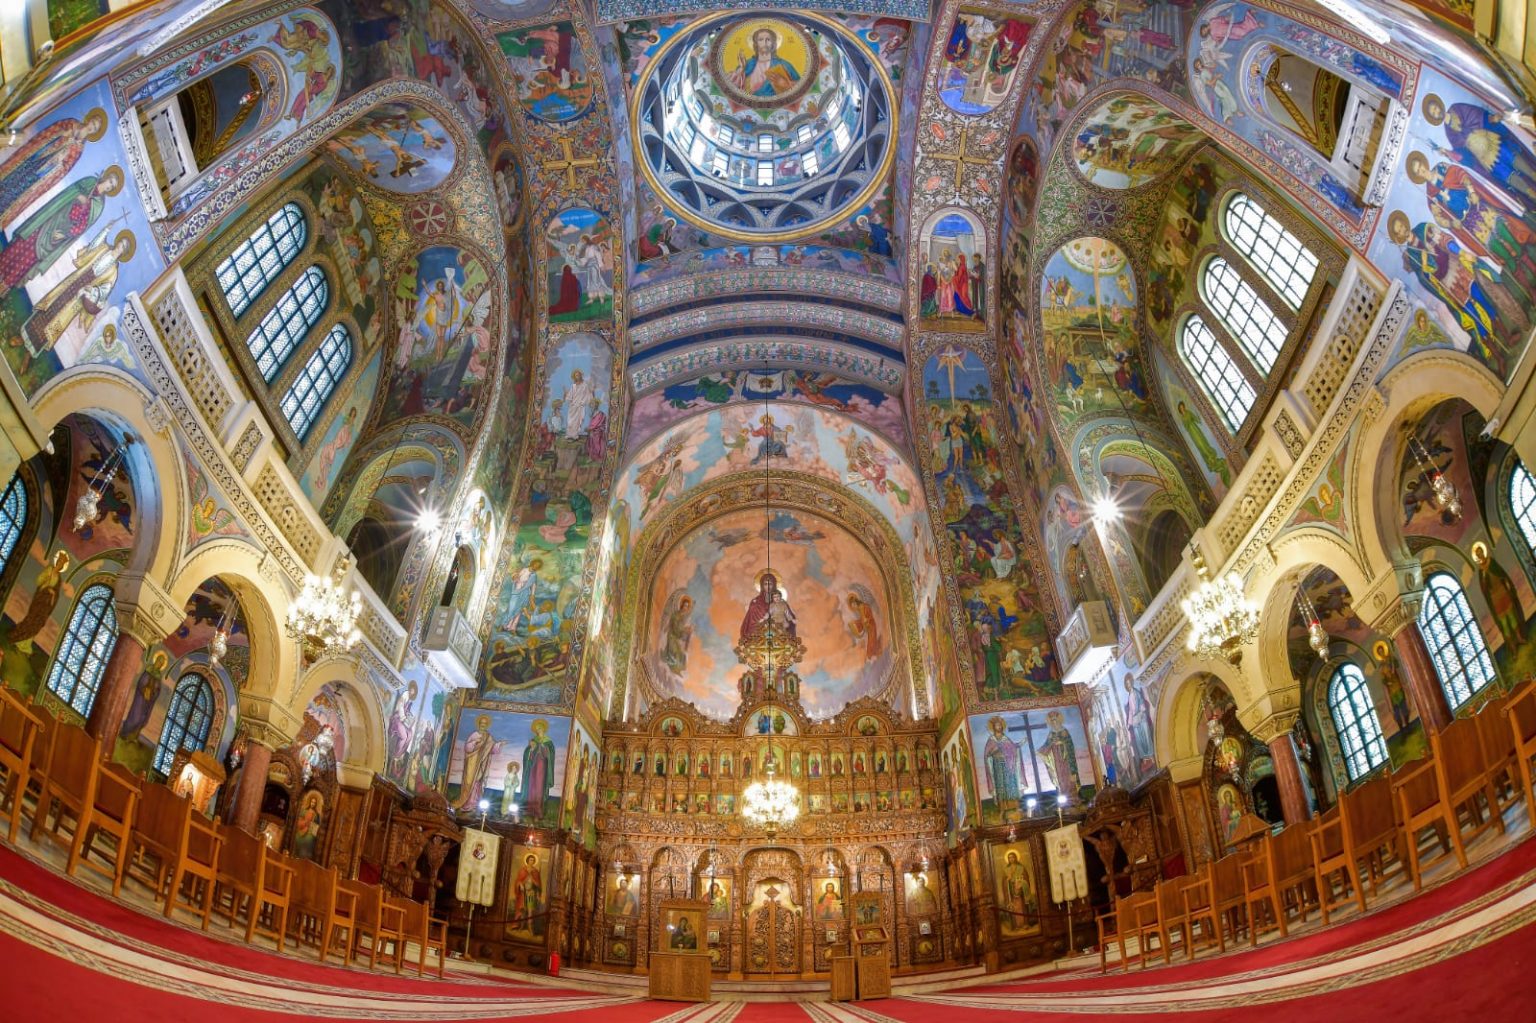 Altarul Bisericii Sfântul Elefterie din Bucuresti a fost pictat de Părintele Arsenie Boca